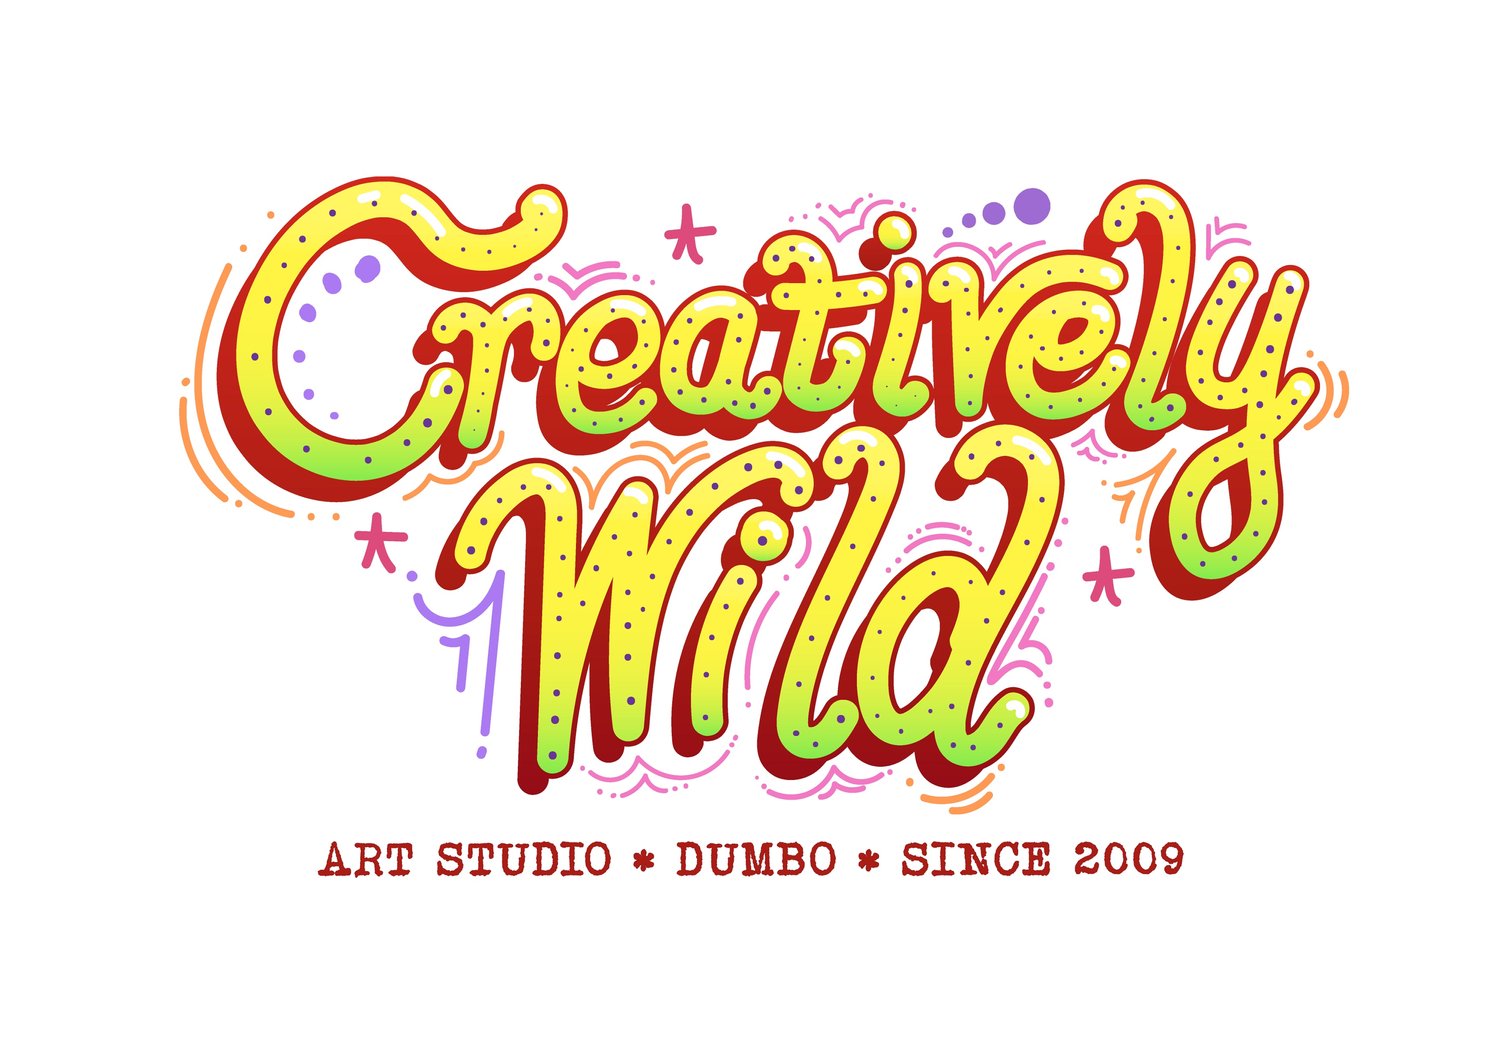 Creatively Wild Art Studio